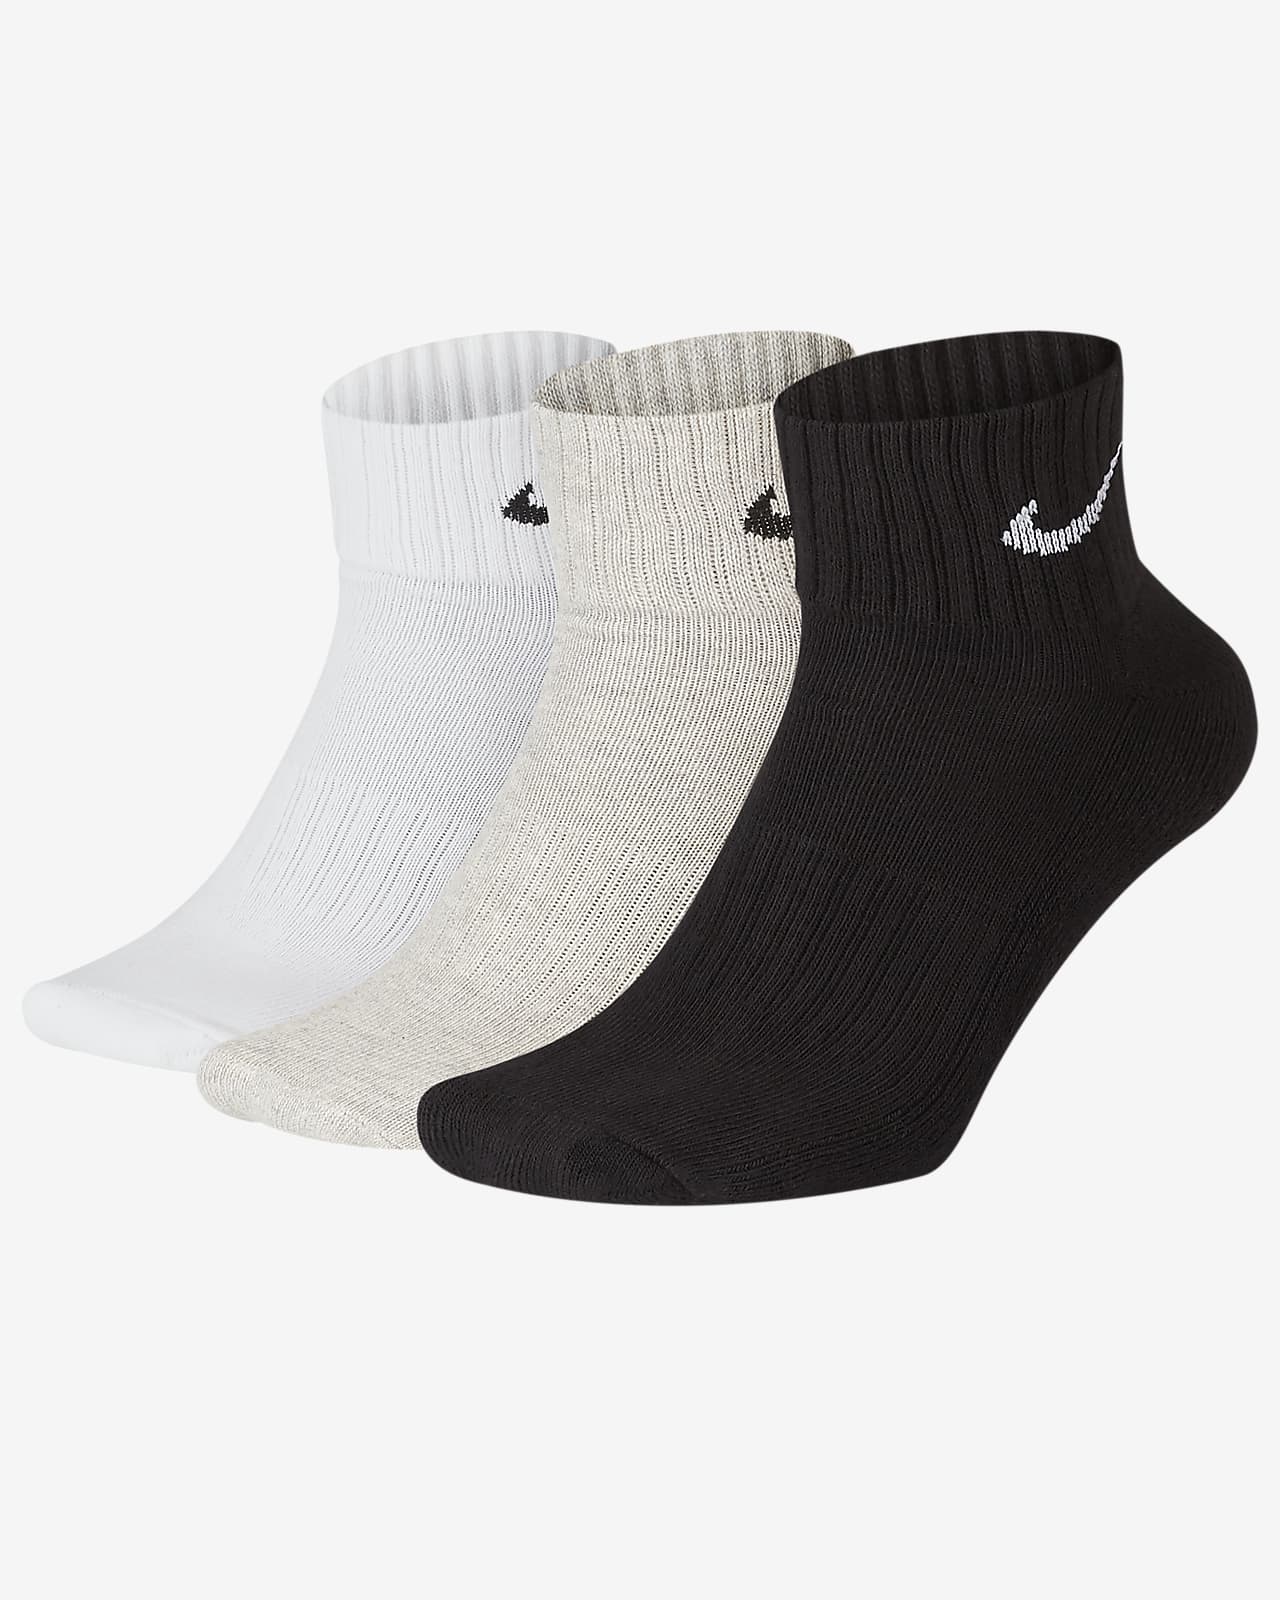 Κάλτσες μέχρι τον αστράγαλο με αντικραδασμική προστασία Nike (τρία ζευγάρια)